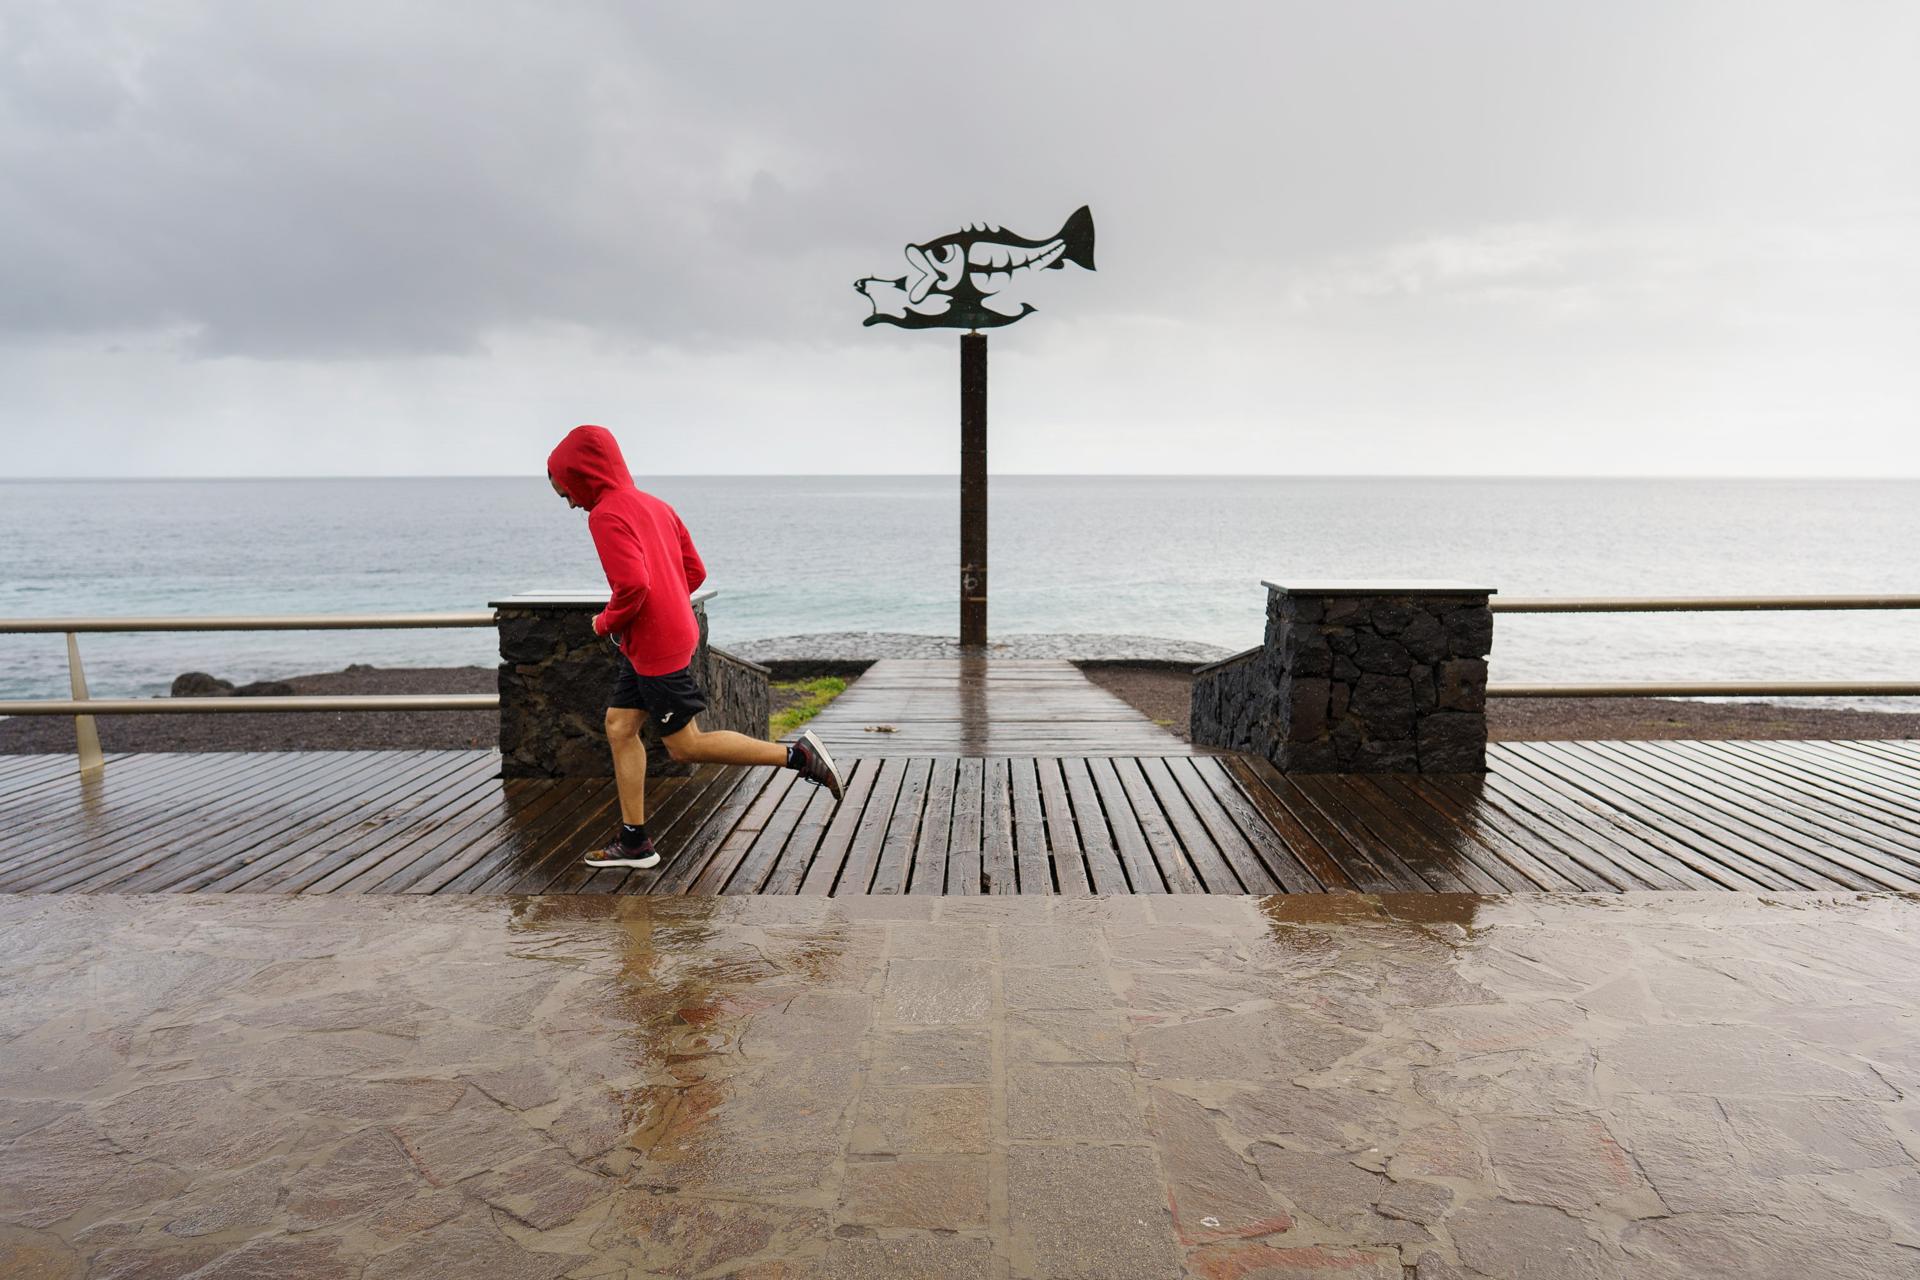 CANDELARIA (TENERIFE).- Imagen de archivo de un corredor que practica deporte en la costa de Las Caletillas, en el municipio de Candelaria (Tenerife) durante la borrasca Filomena. EFE/Ramón de la Rocha